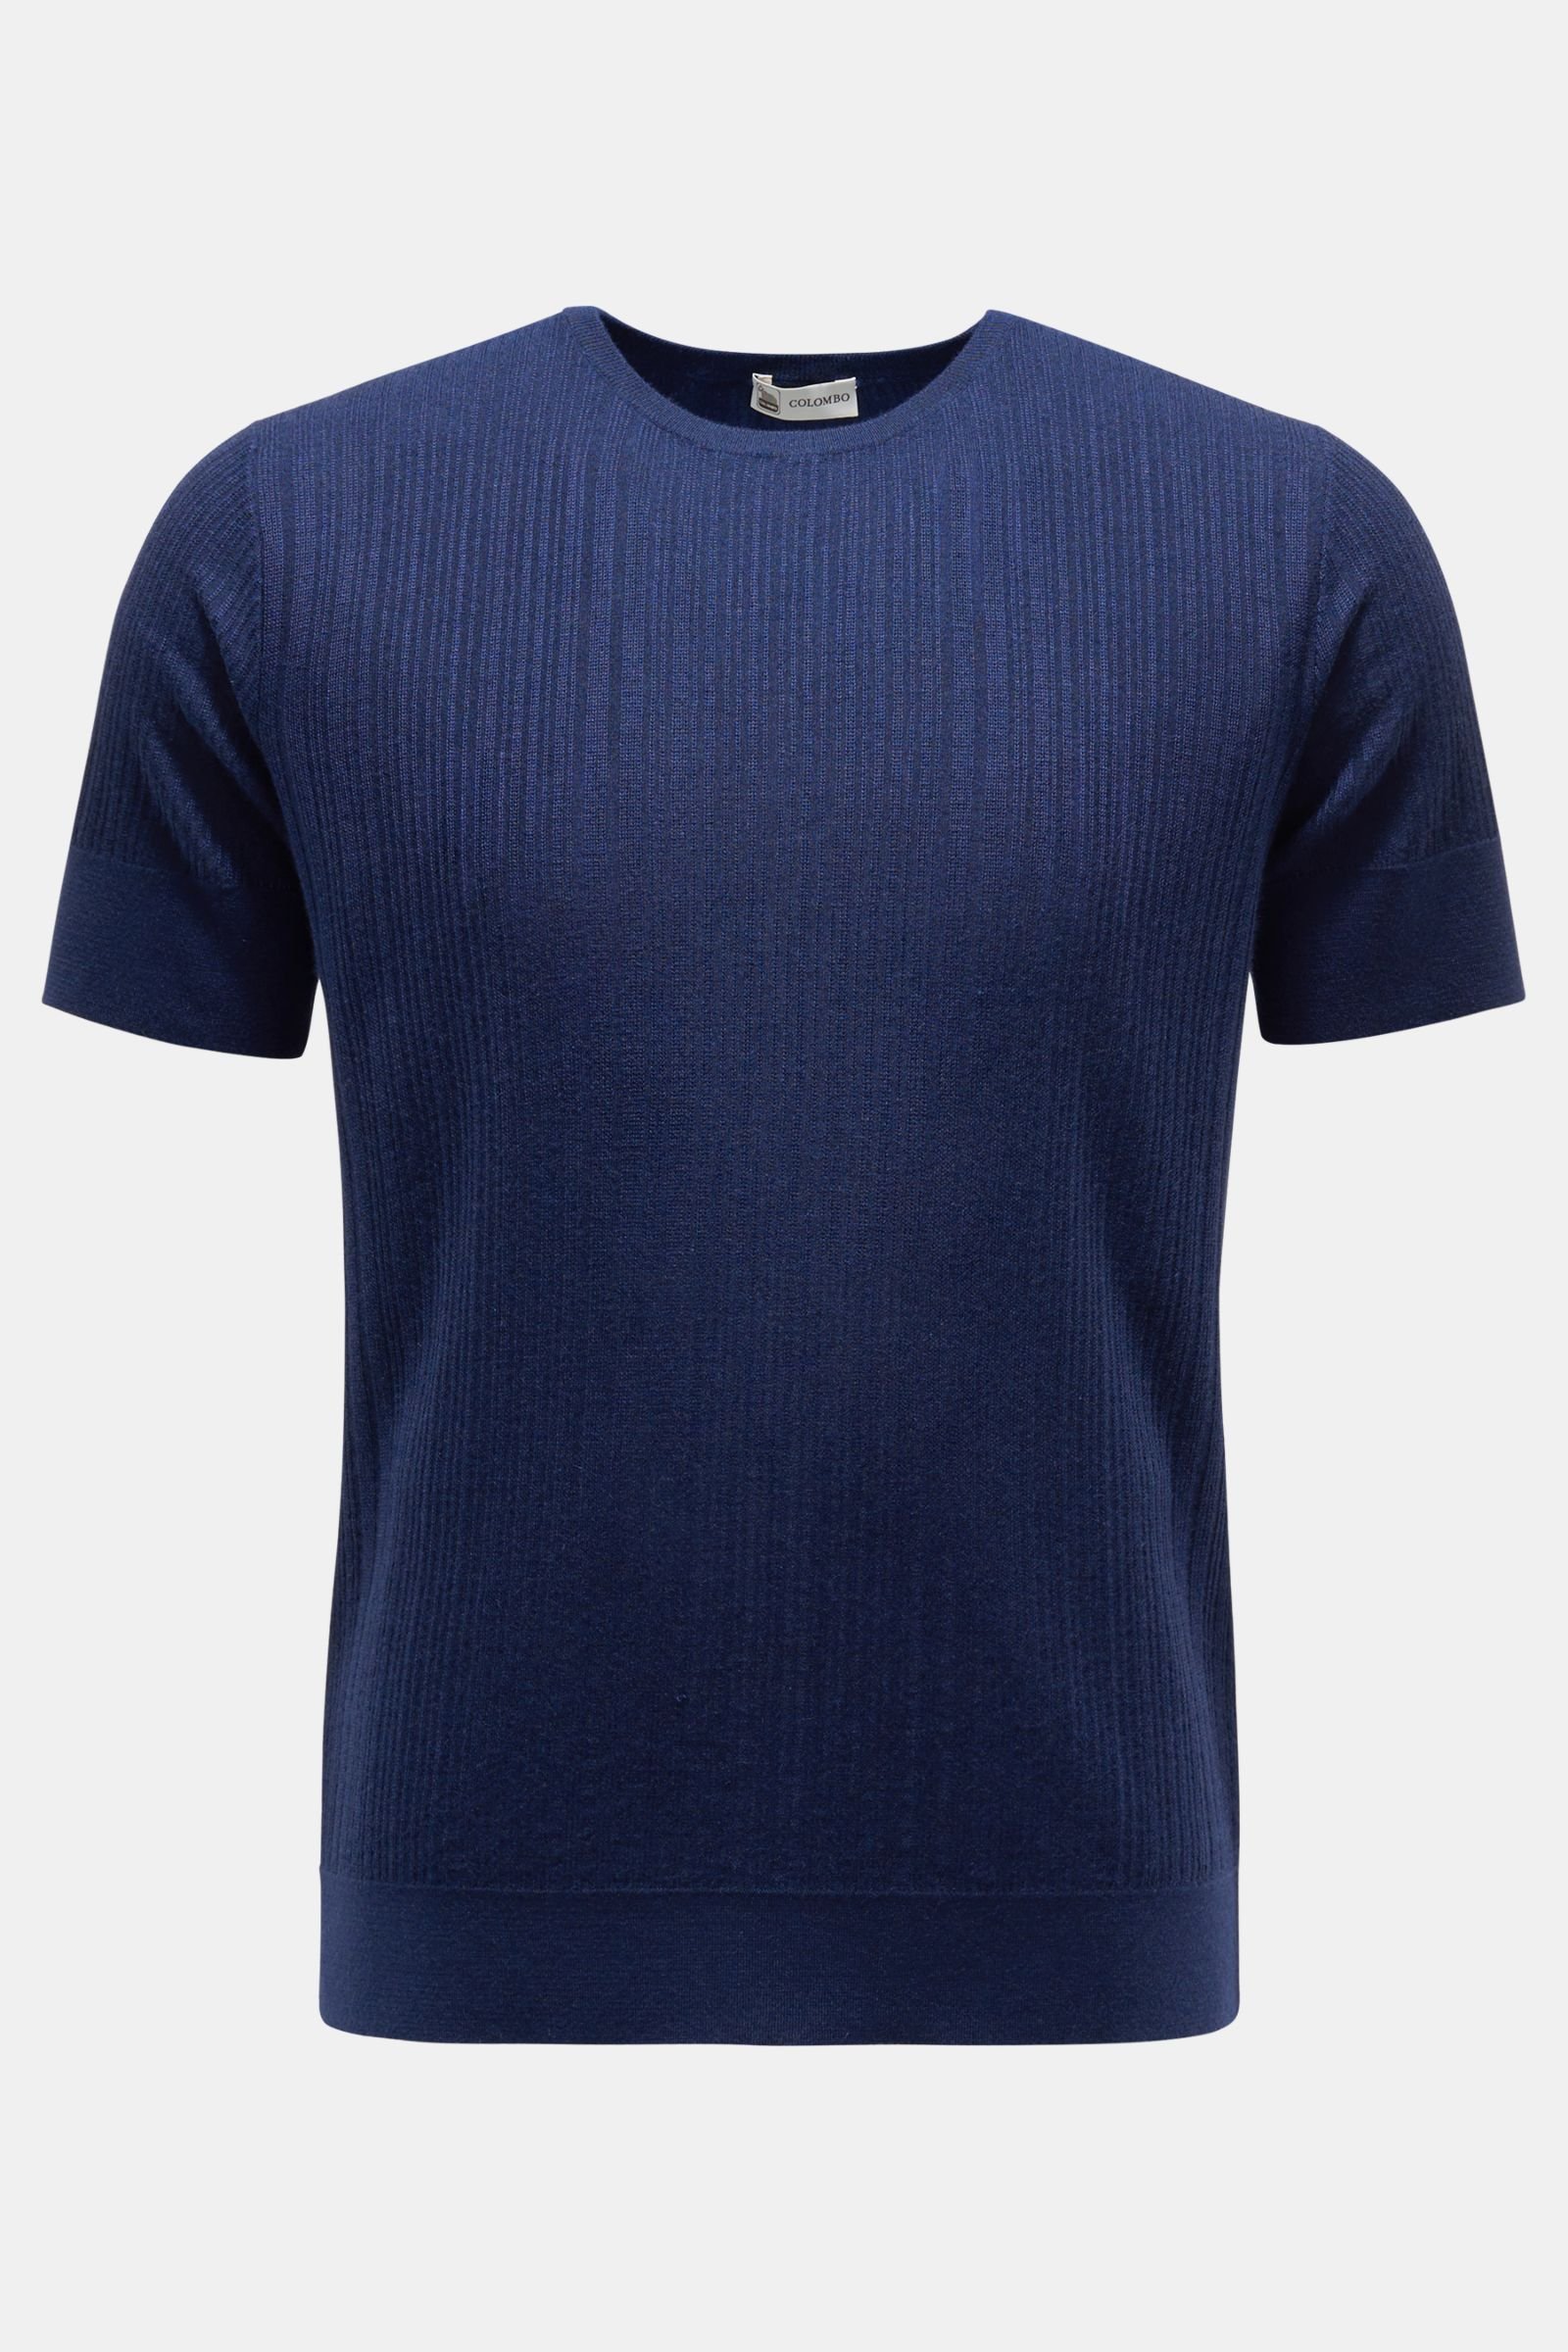 Fine knit short sleeve jumper dark blue